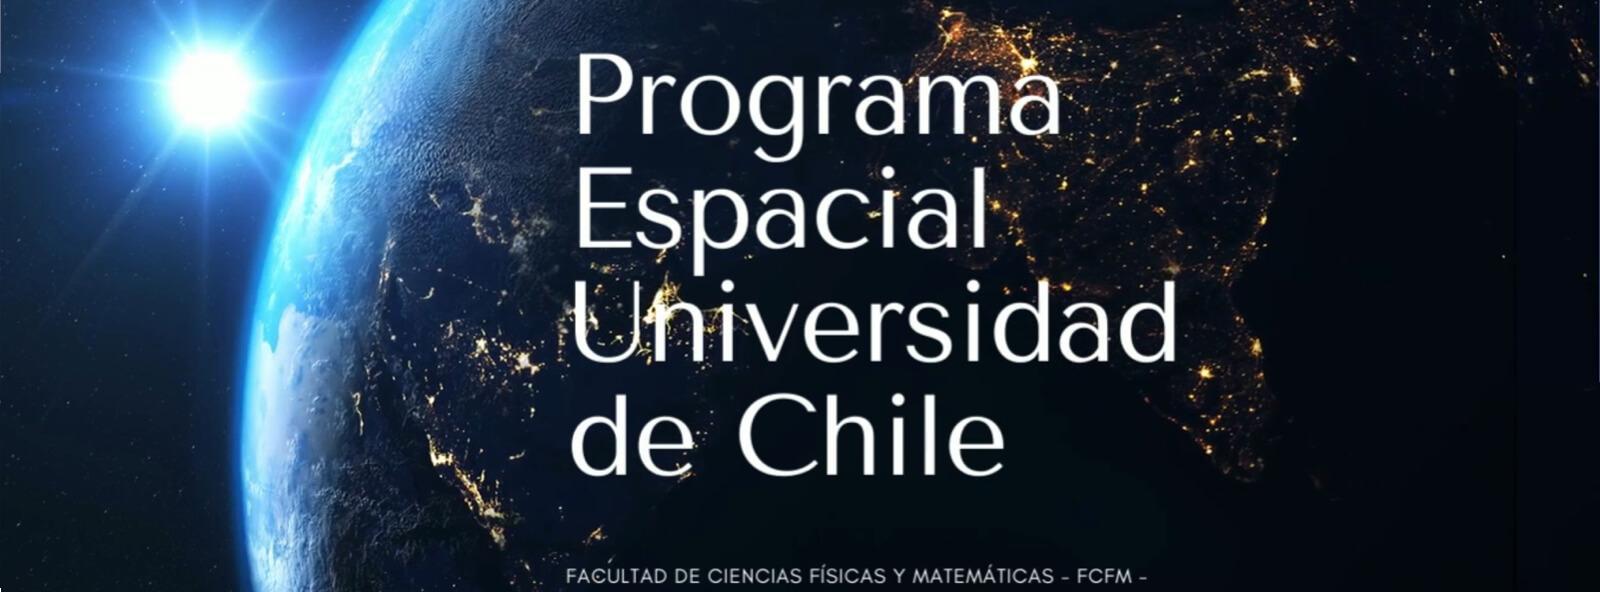 Programa Espacial Universidad de Chile